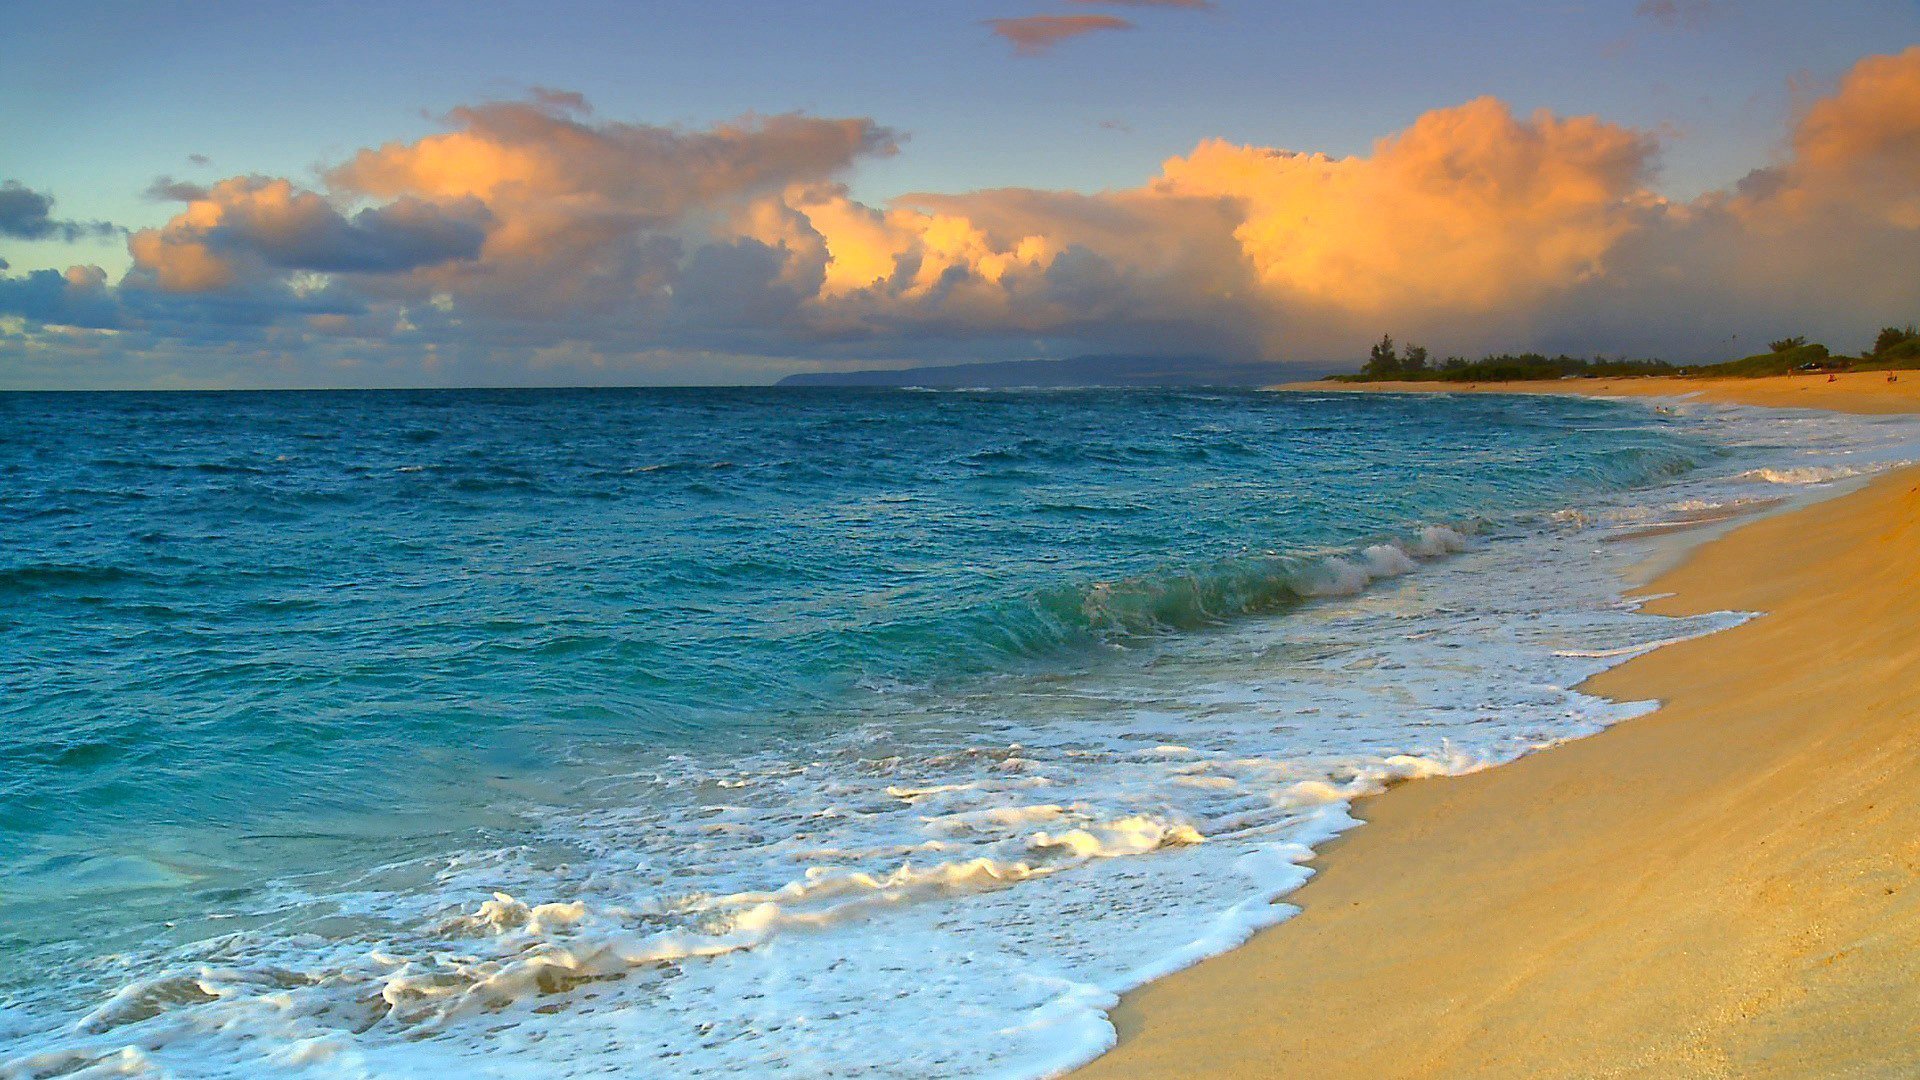 Красивые заставки море. Сансет Бич Гавайи. Пляж Сансет Бич Гавайи. Красивые морские пейзажи. Берег моря.